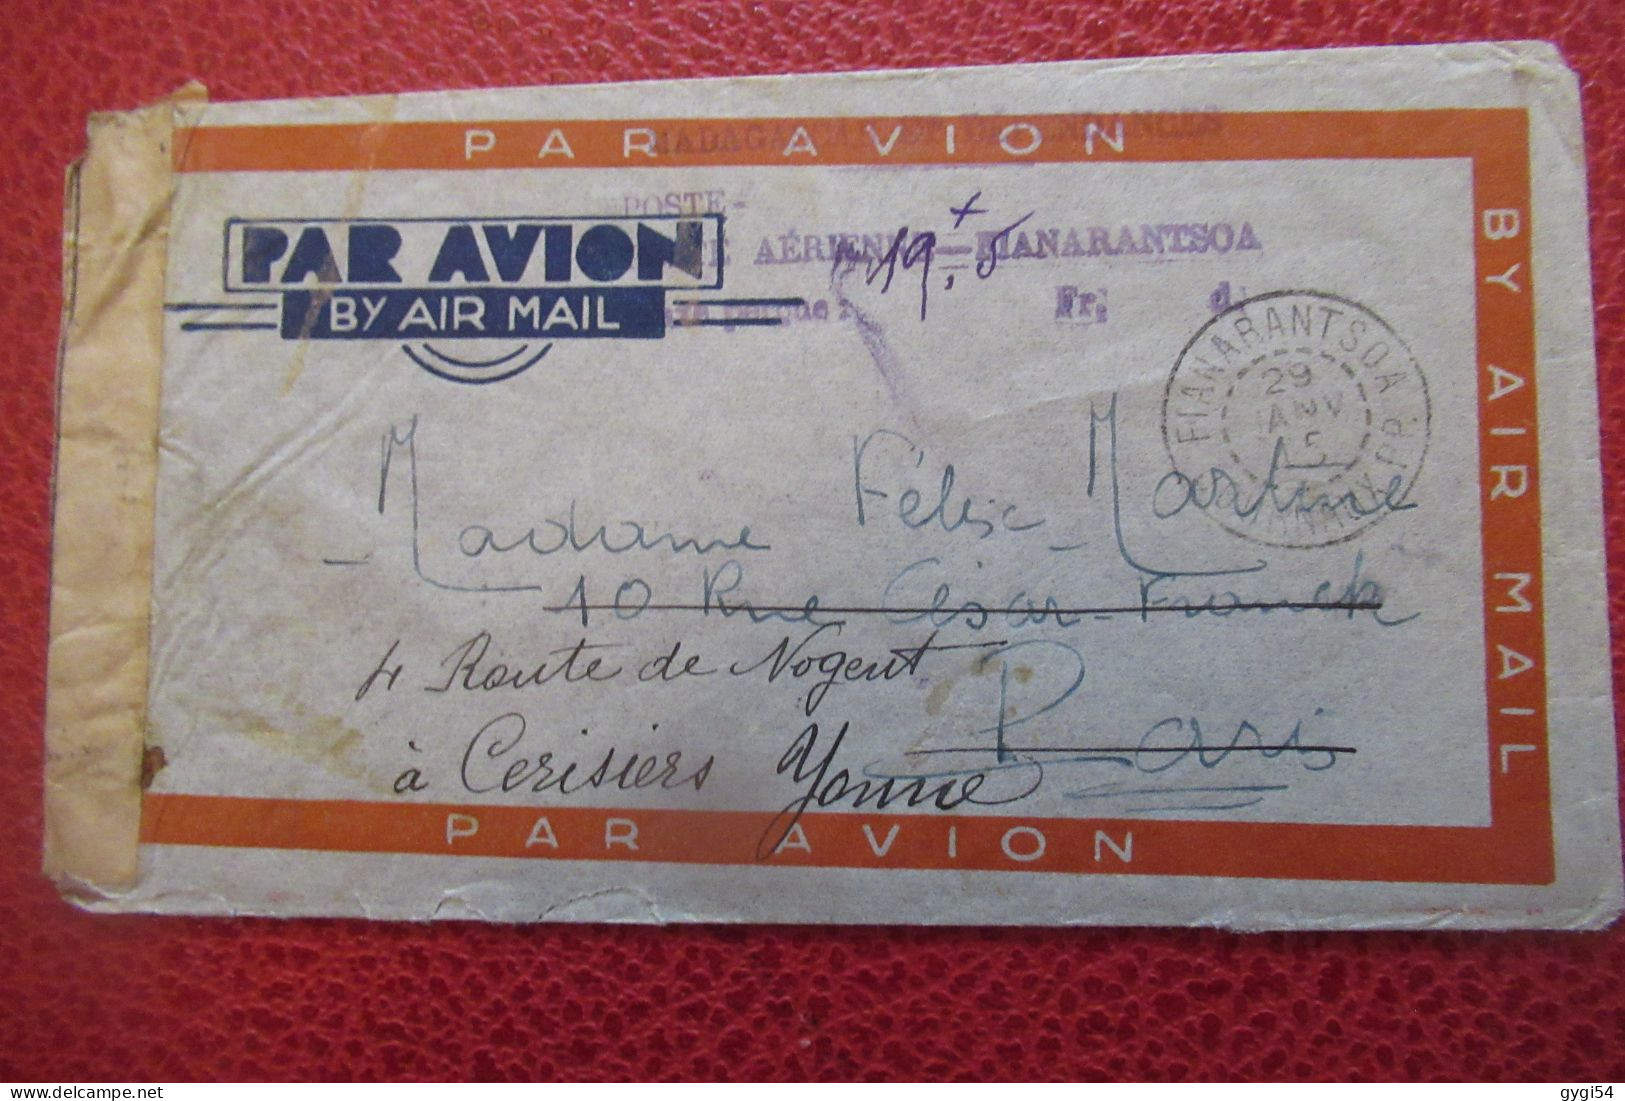 MADAGASCAR Lettre Par Avion Censurée Du 29 01 1945 De FIANARANTSOA Pour CERISIERS  (89 ) - ...-1929